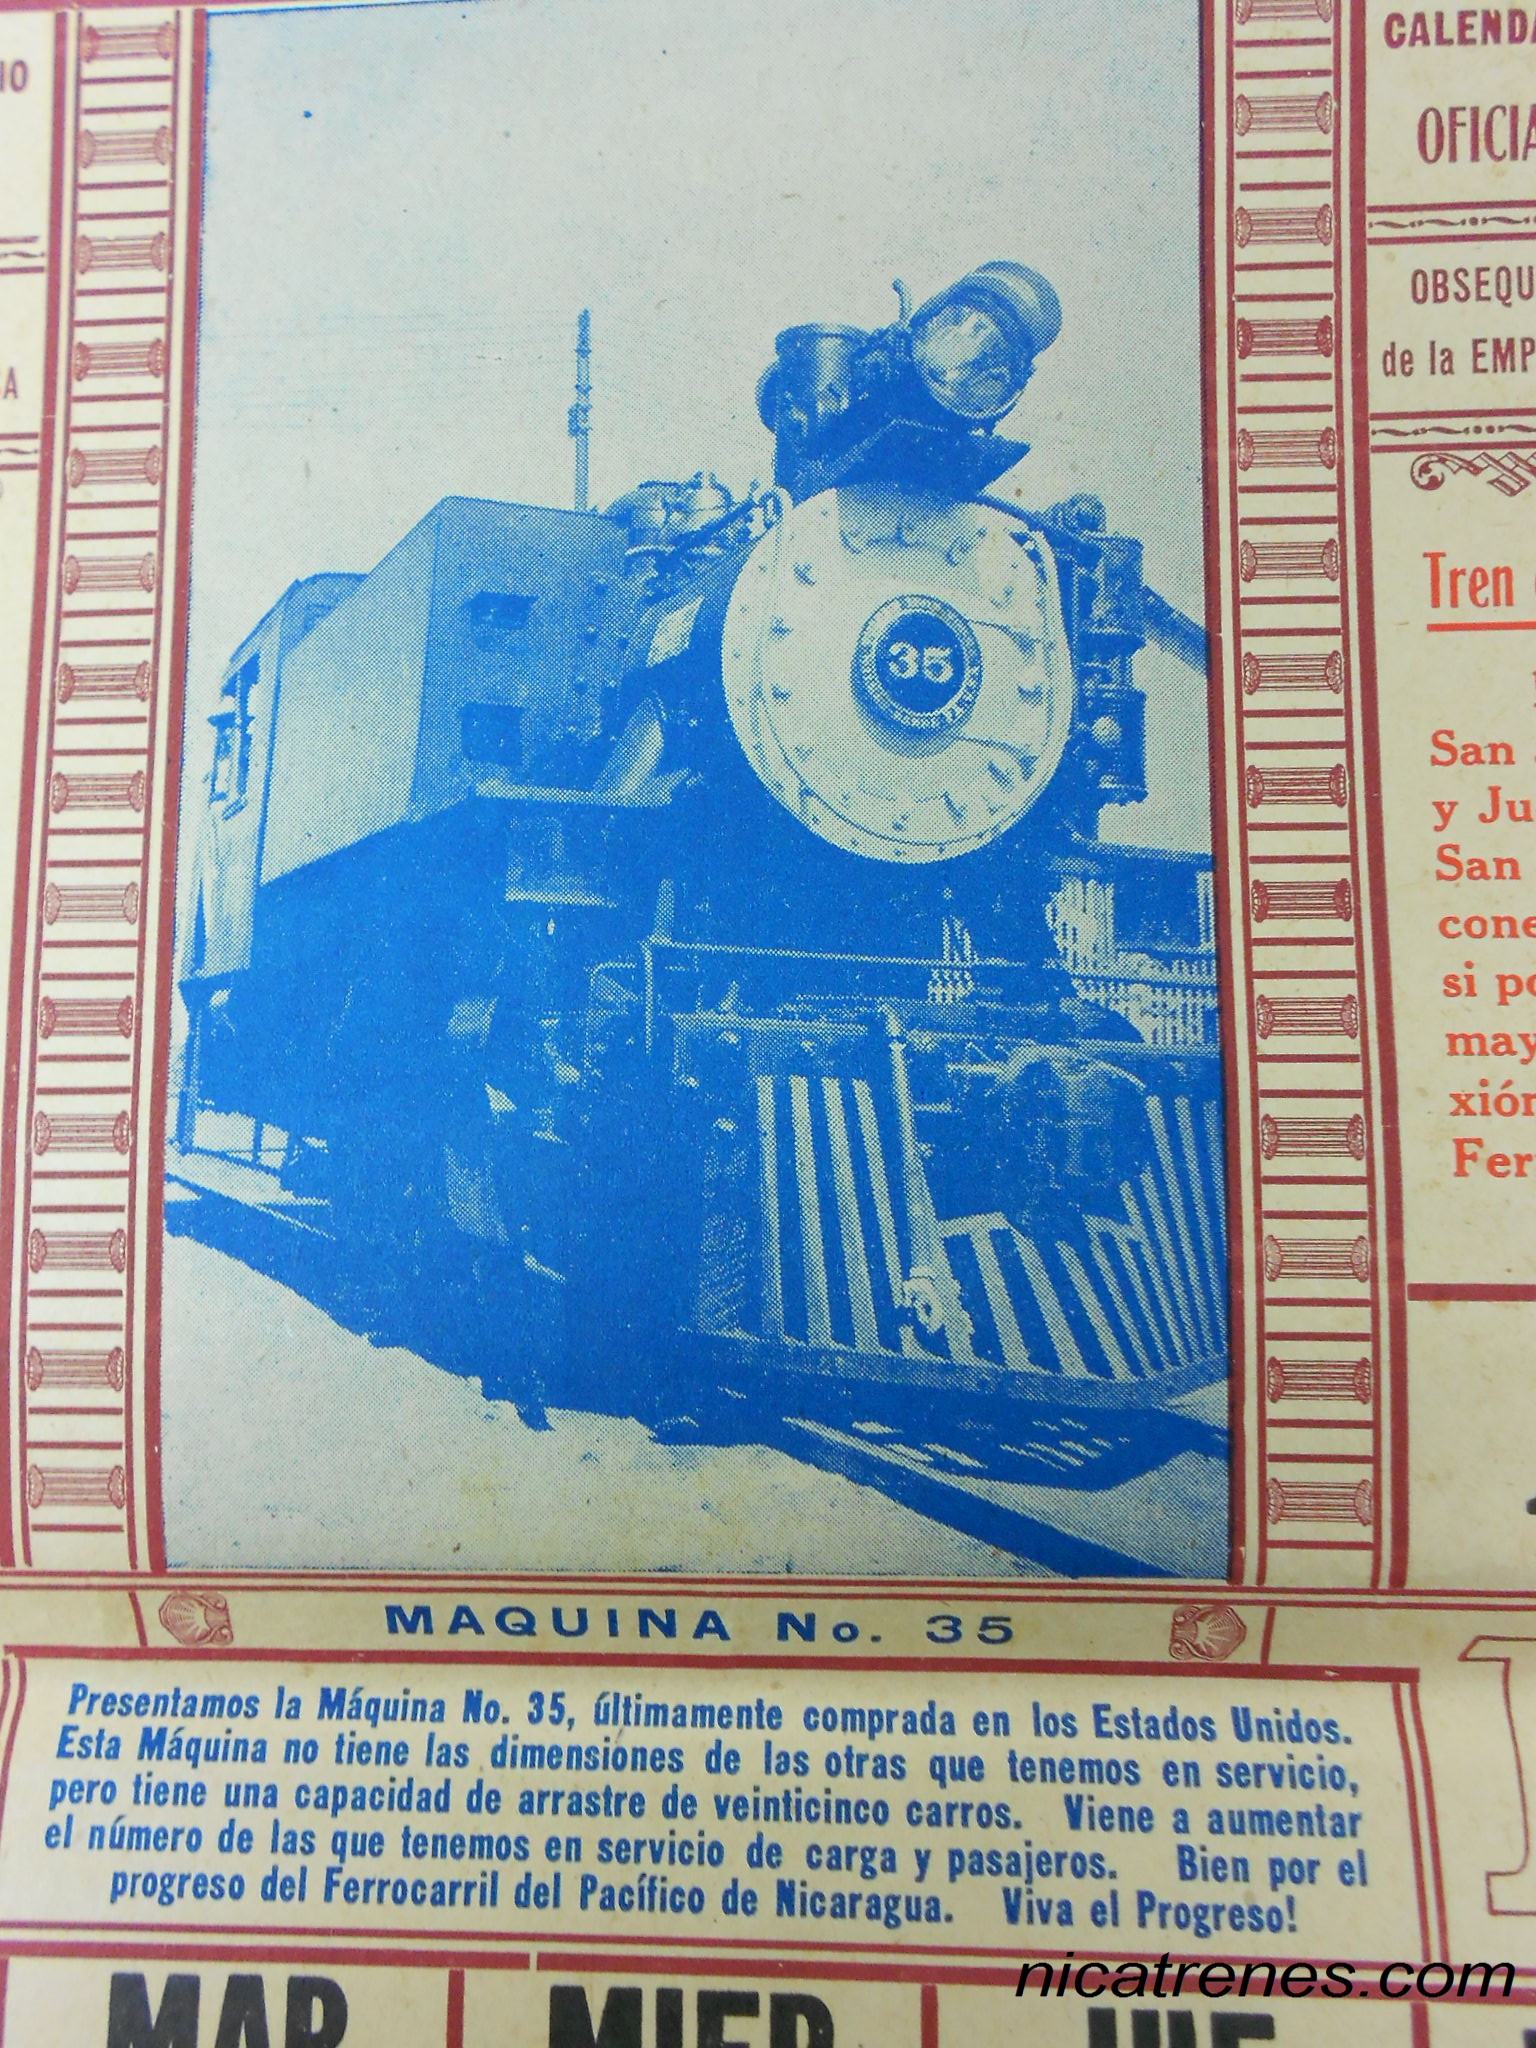 Locomotive No. 35 from calander 1953